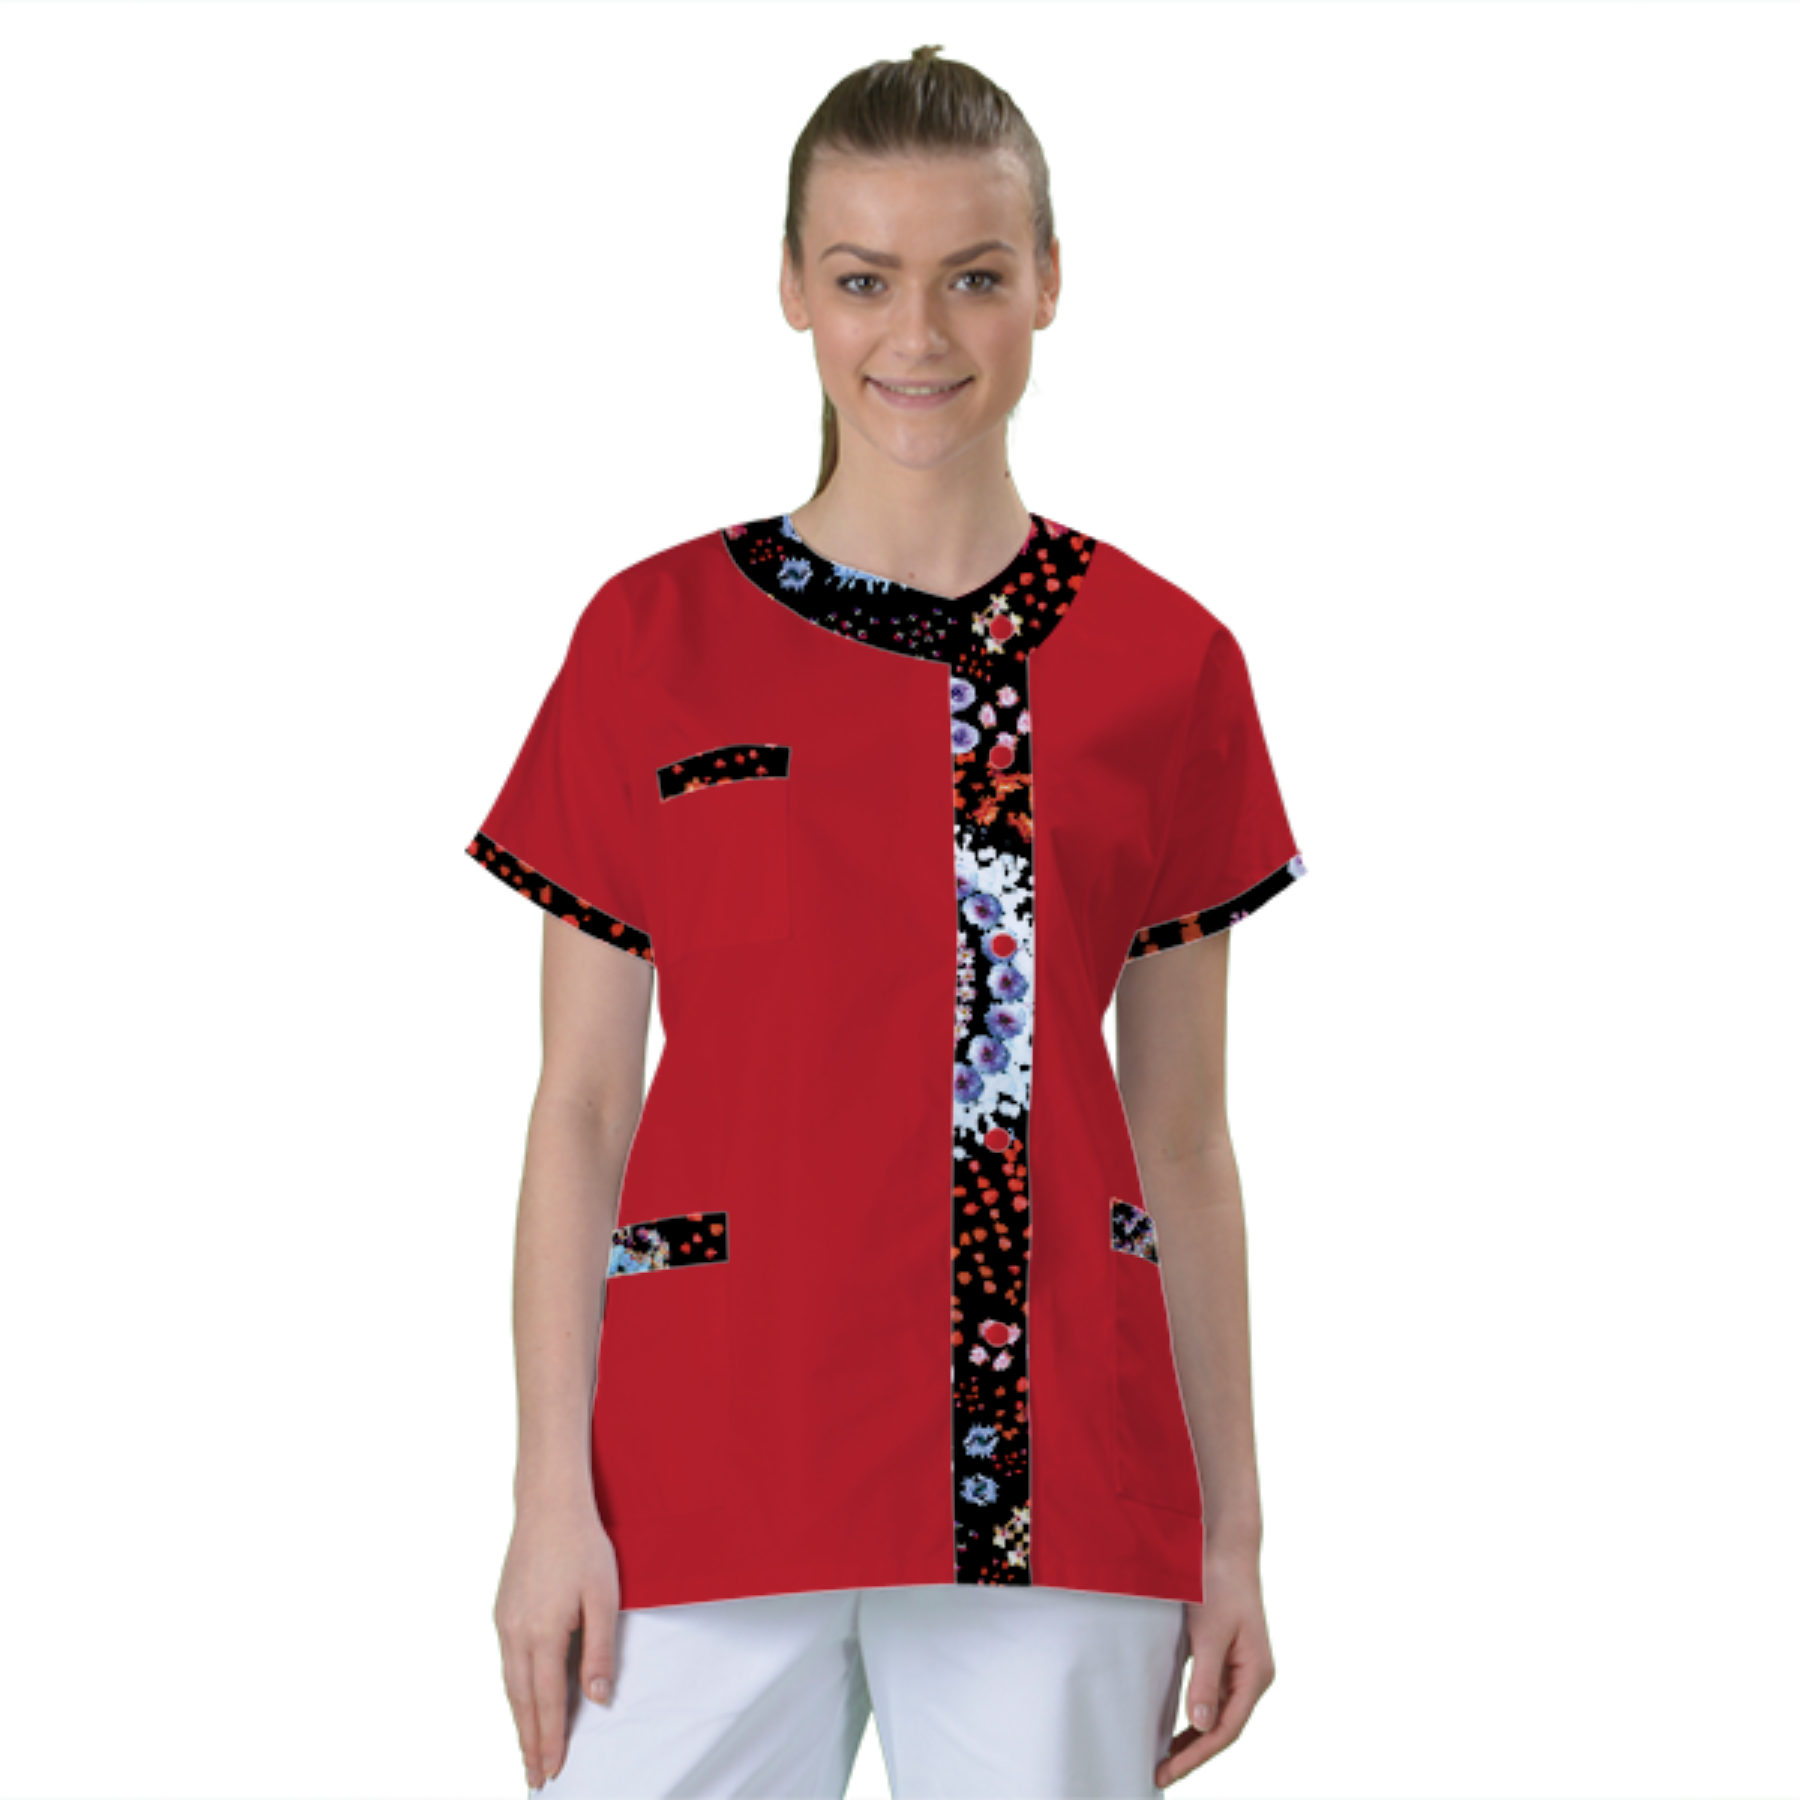 blouse-de-travail-personnalisee-tunique-medicale acheté - par Edith - le 30-01-2021